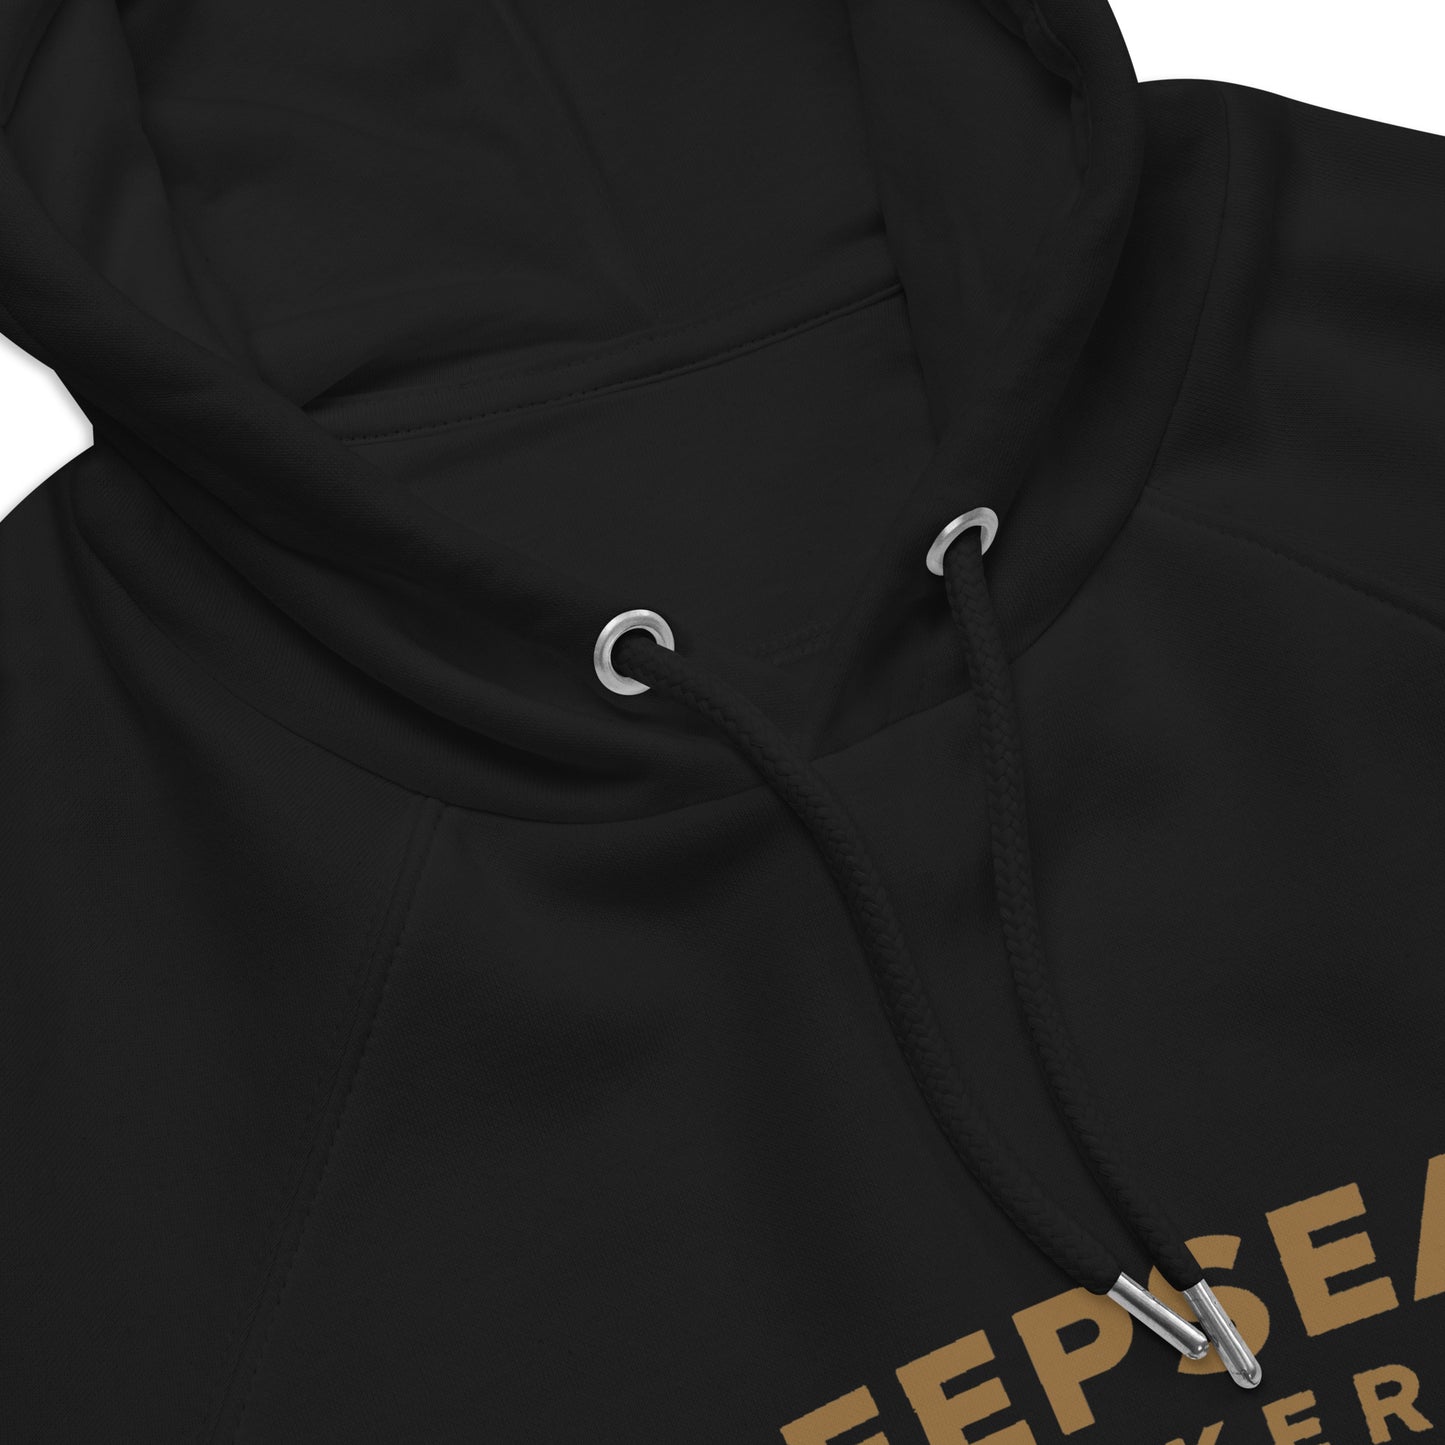 DEEPSEA Locker / Made Under Pressure / Eco Raglan hoodie